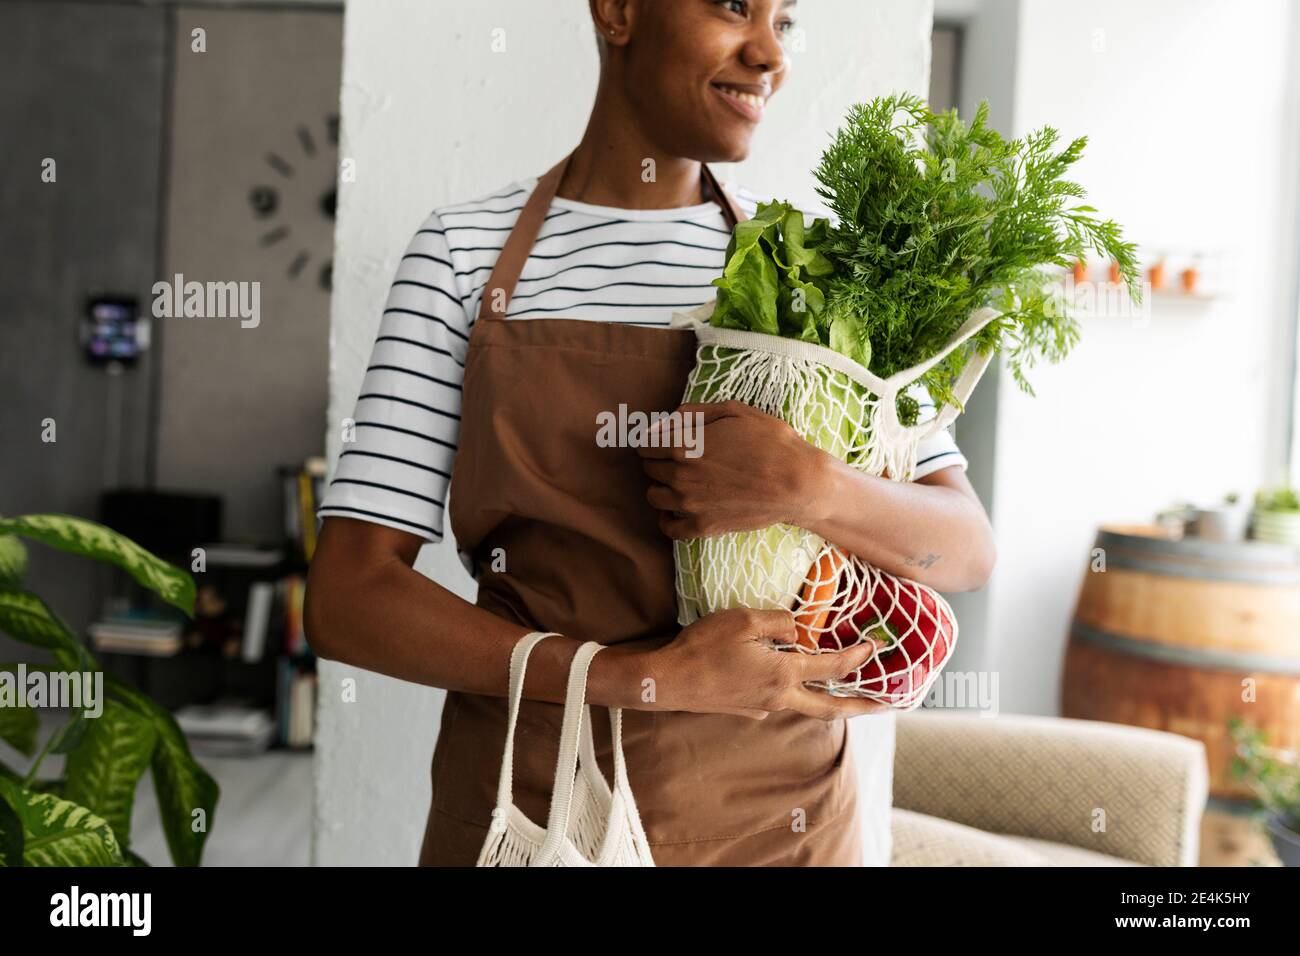 Hübsche Frau in Schürze, die Netz mit frischem Gemüse trägt Stockfoto